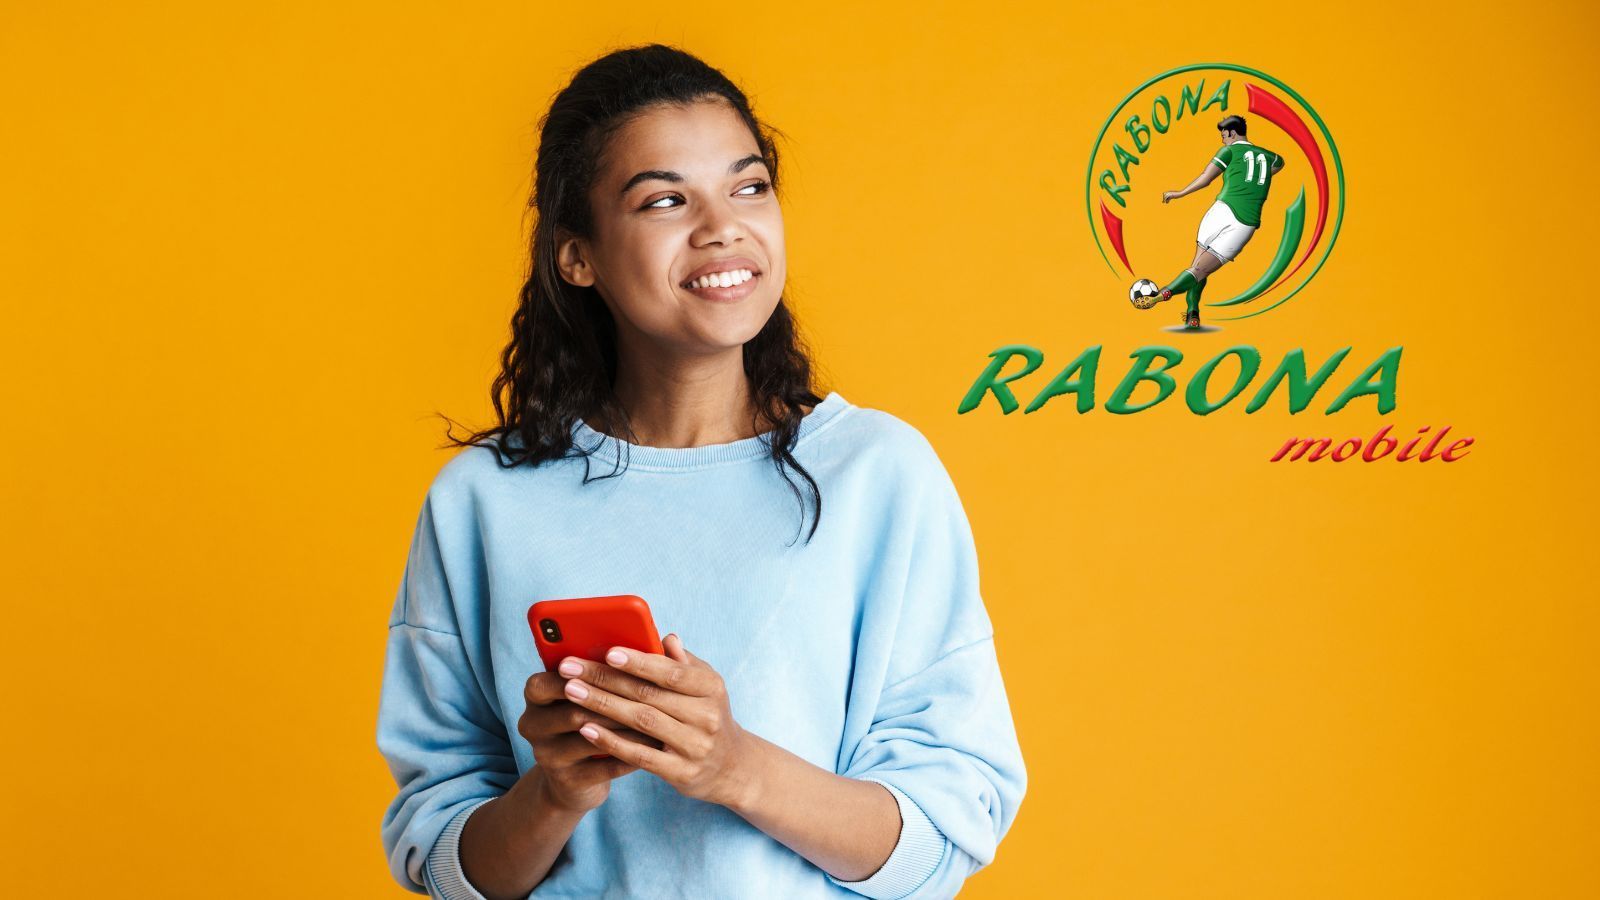 Rabona Mobile chiude? La situazione è assurda in Italia 